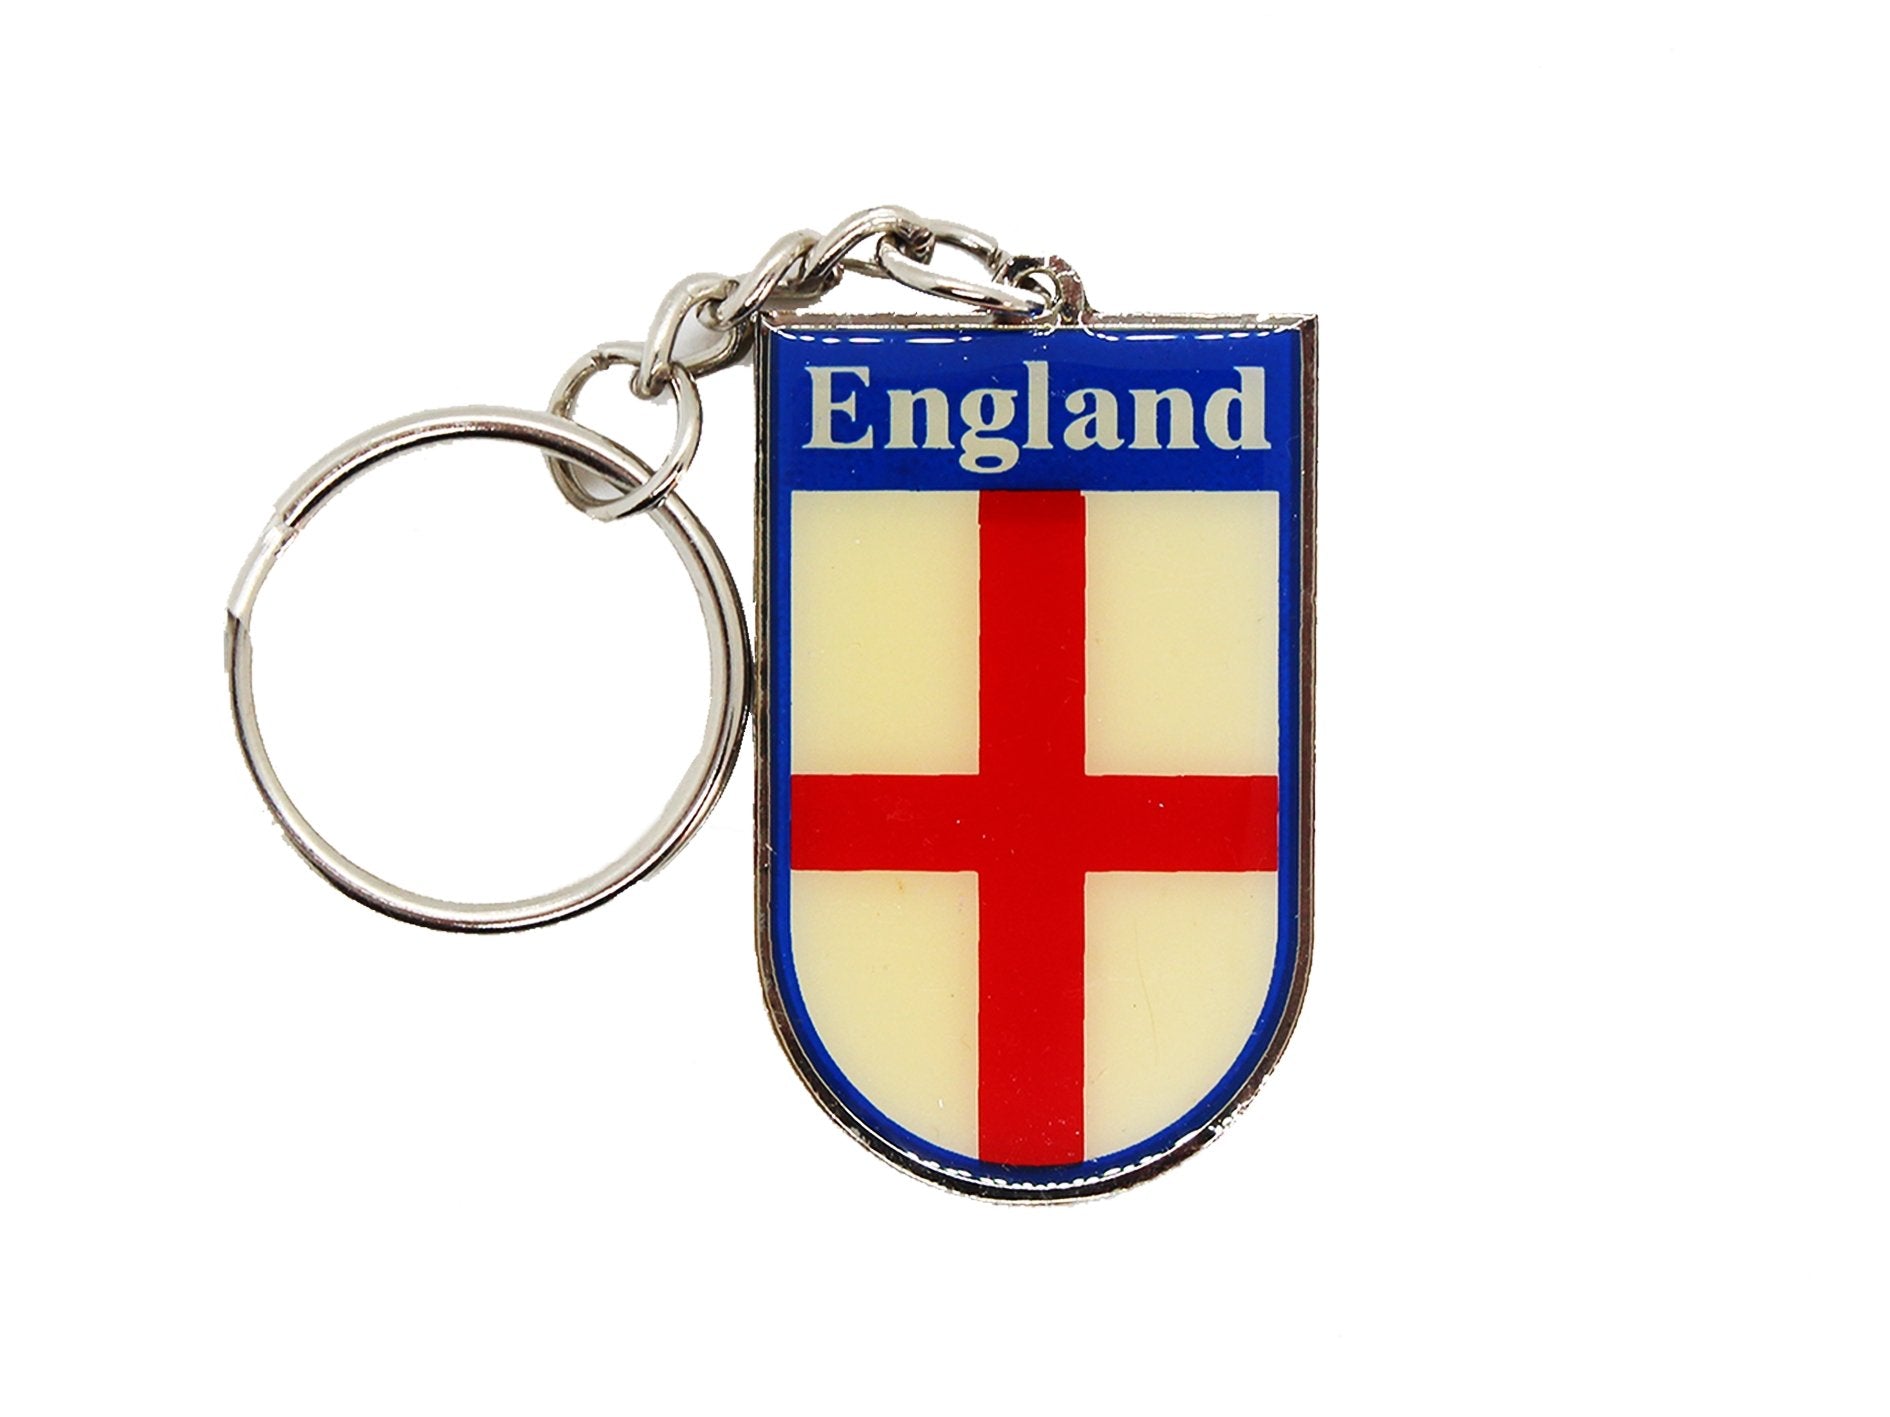 England Key Rings - Assorted Designs - 12 Per Pack - VIR Wholesale